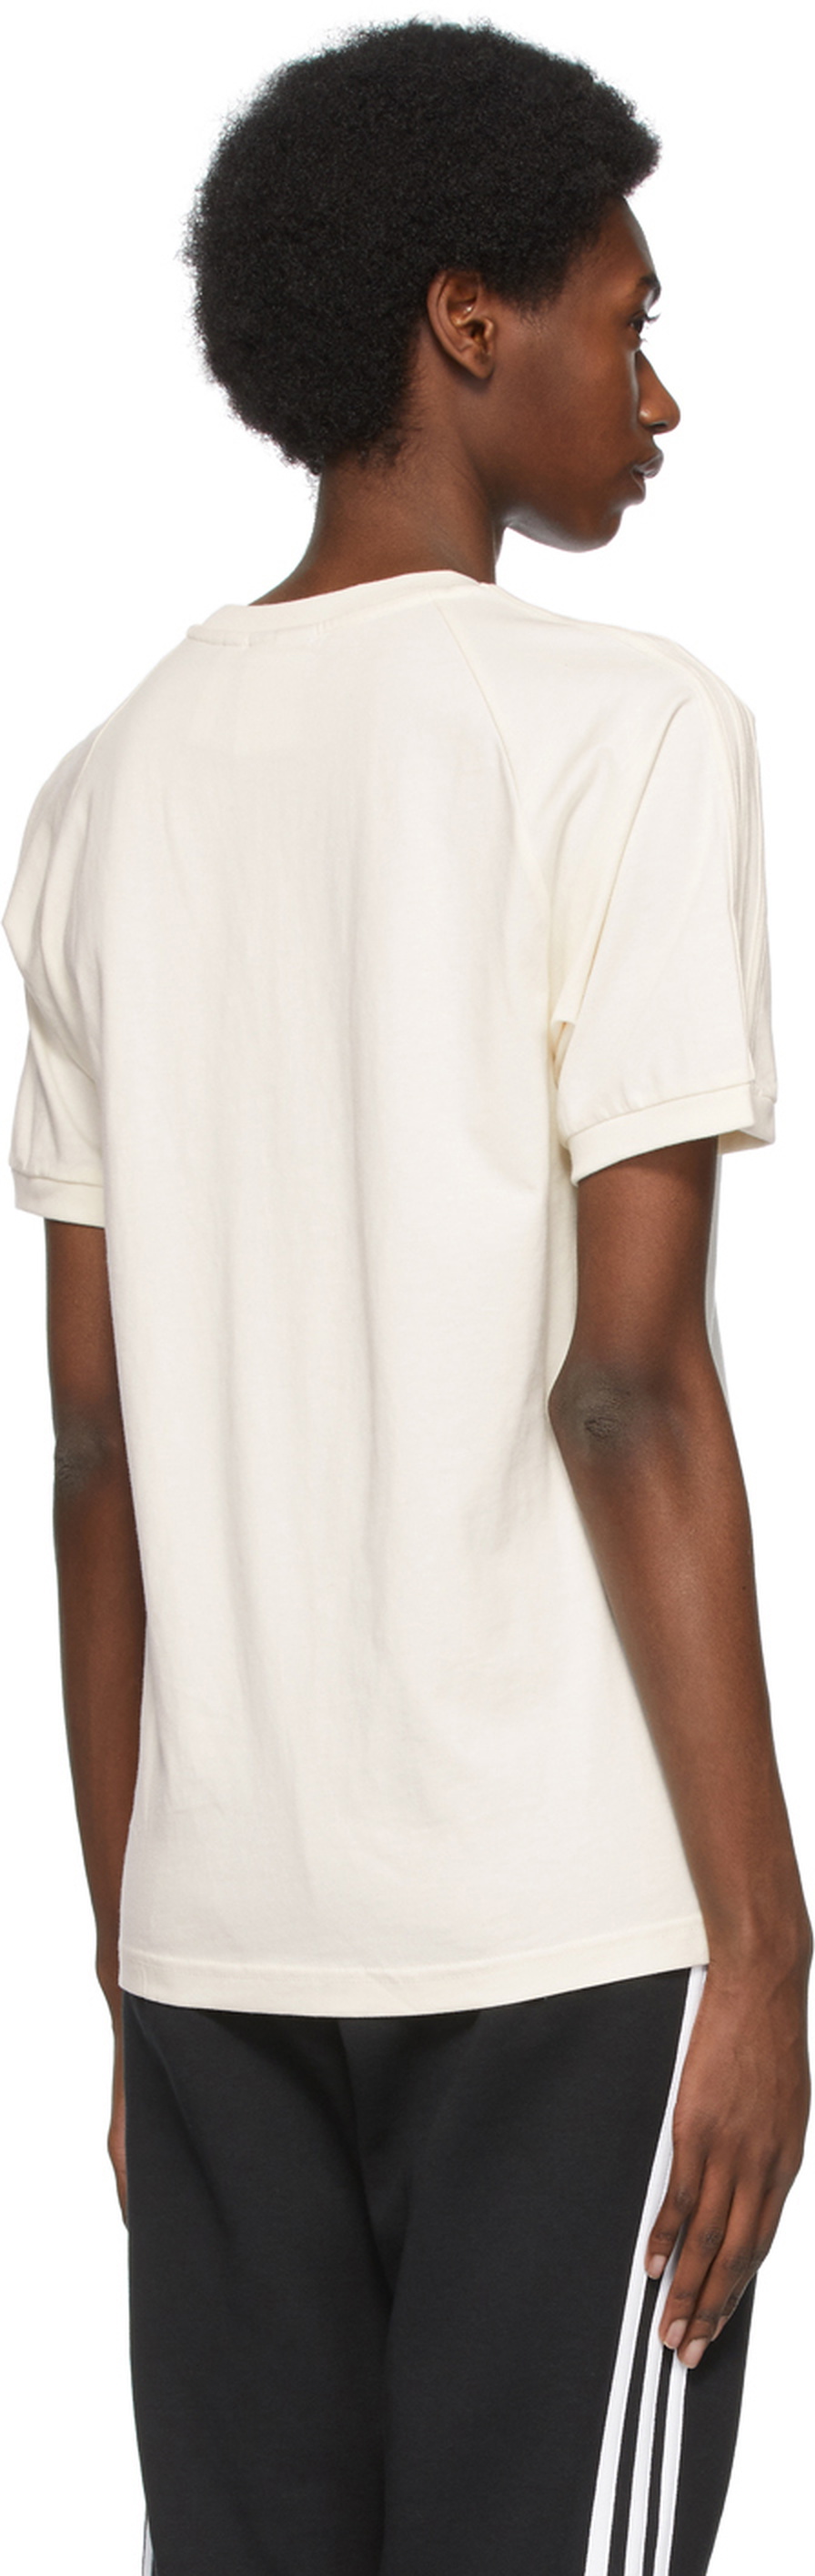 adidas Originals Off-White 3-Stripes No-Dye adidas Originals Adicolor T-Shirt